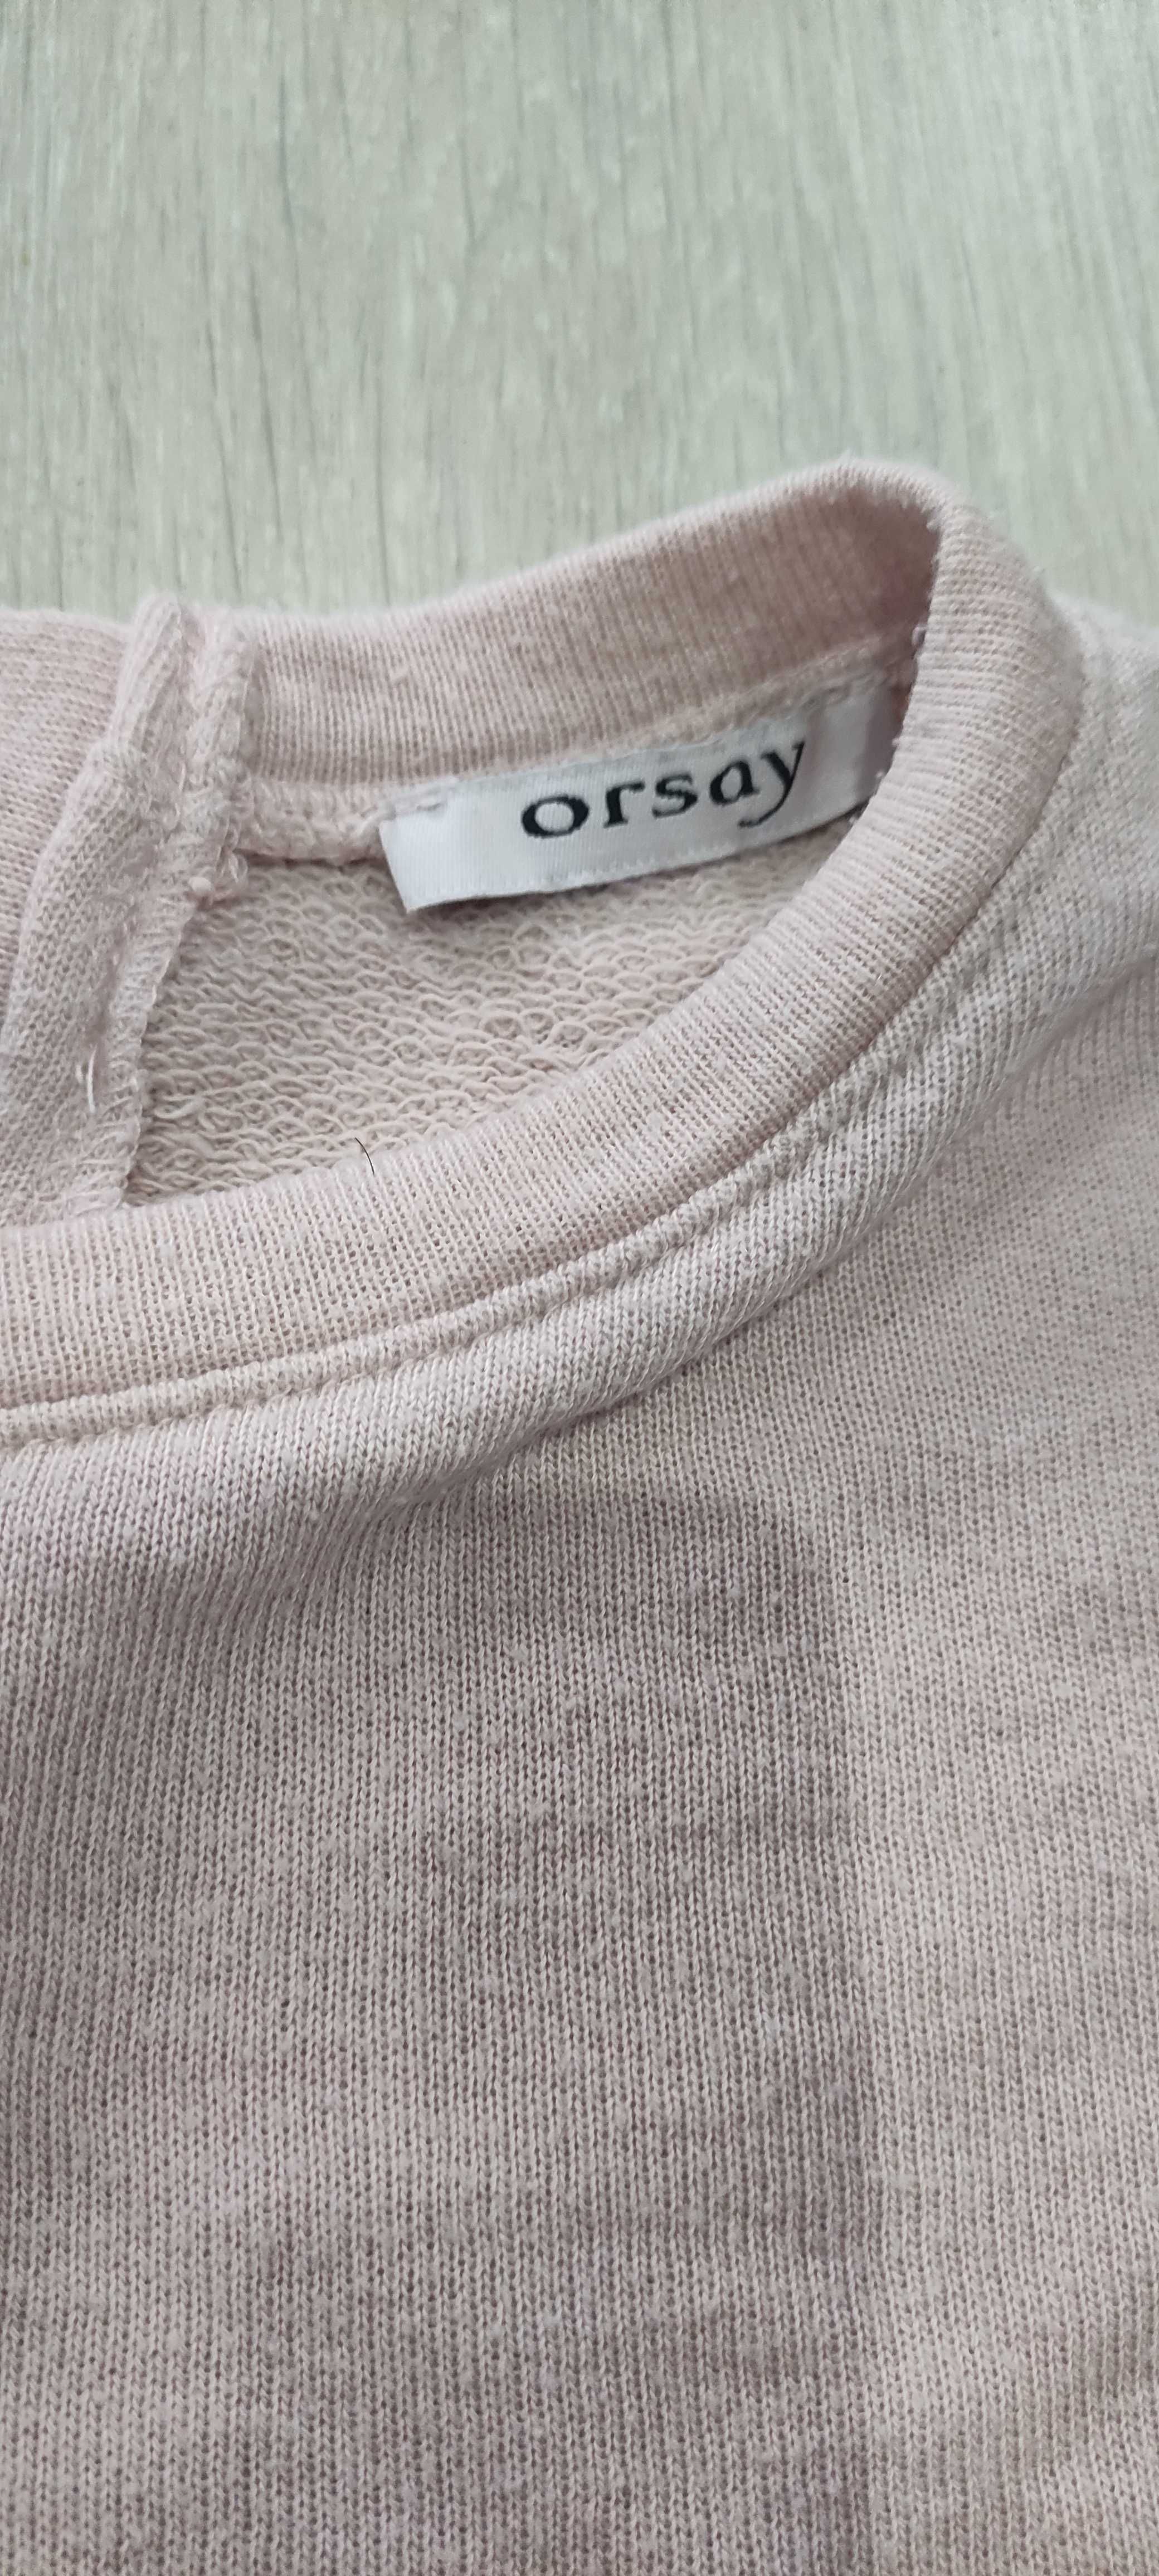 Pudrowy różowy sweter/sweterek Orsay, rozmiar S